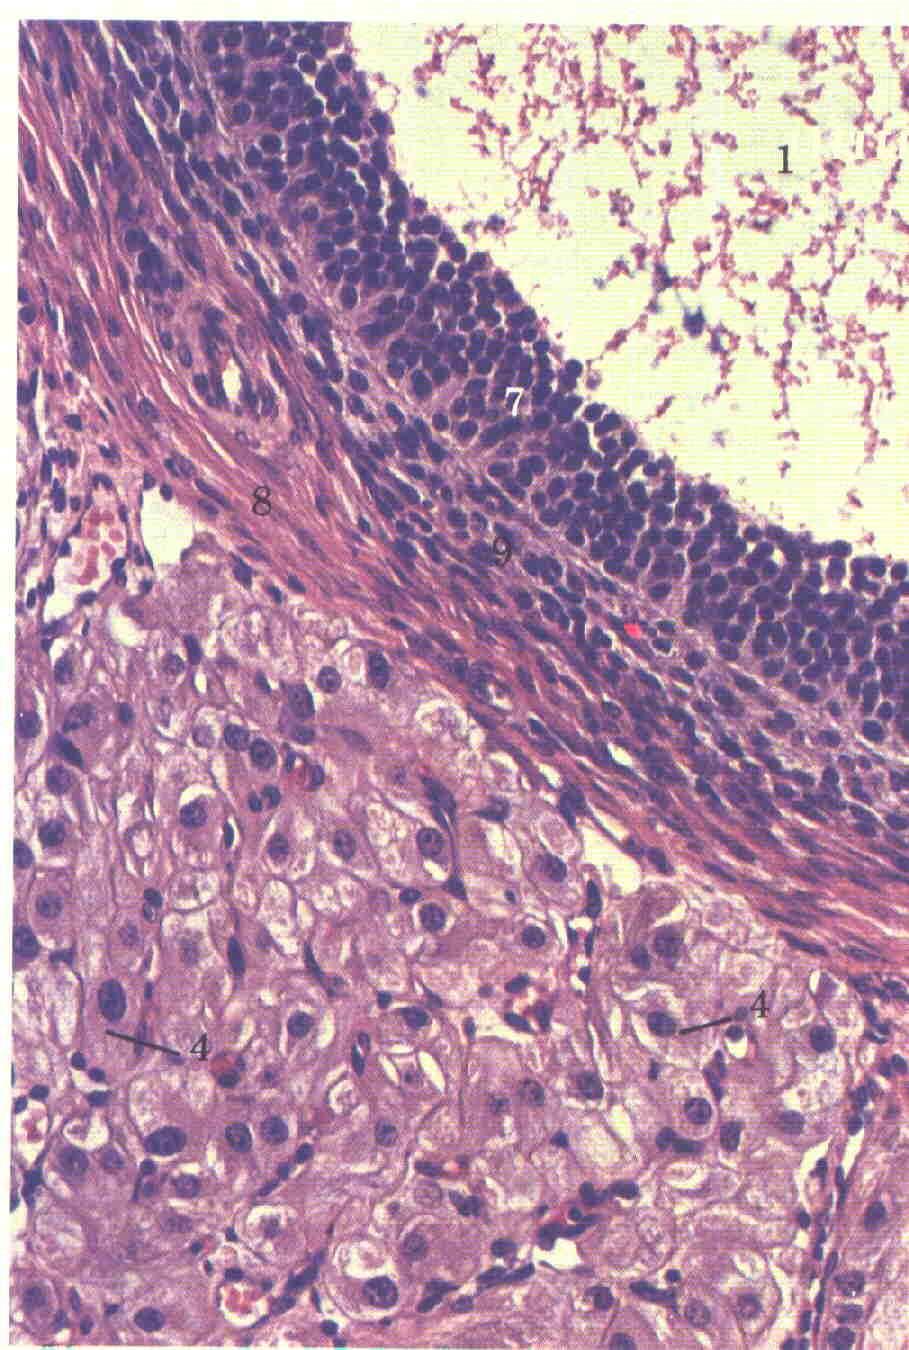 elevata follicolo ovulatorio OVULAZIONE antro follicolo di Graaf cellule della granulosa oocita cellule della teca follicolo primordiale